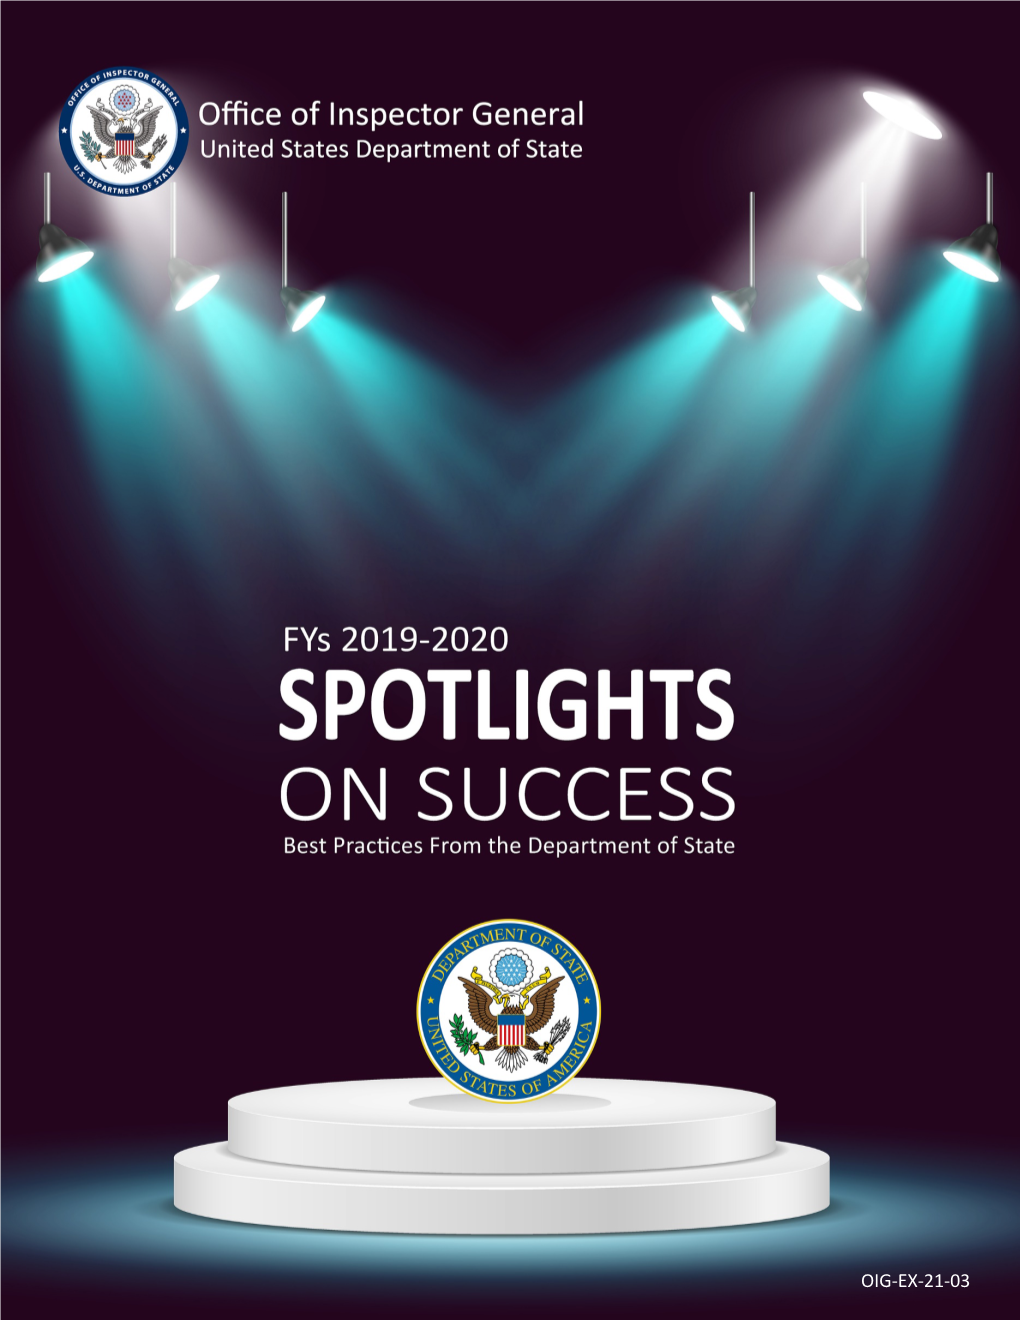 OIG Fys 2019-2020 Spotlights on Success